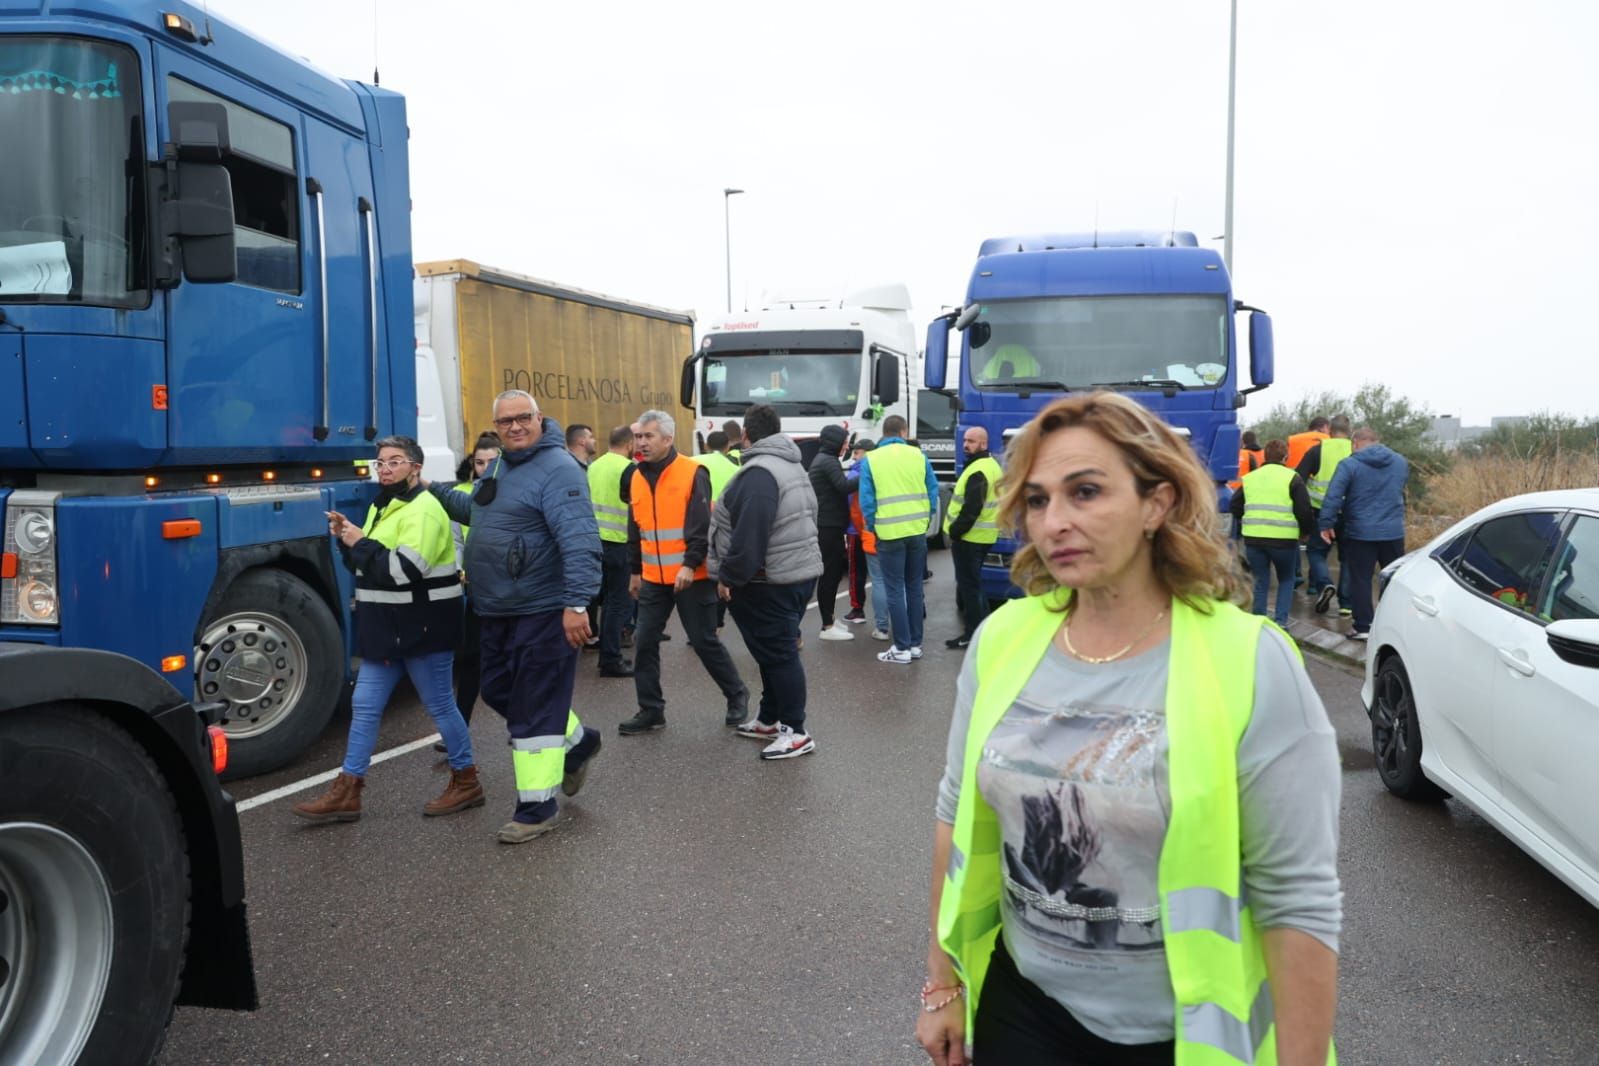 Protesta de camioneros en Castellón